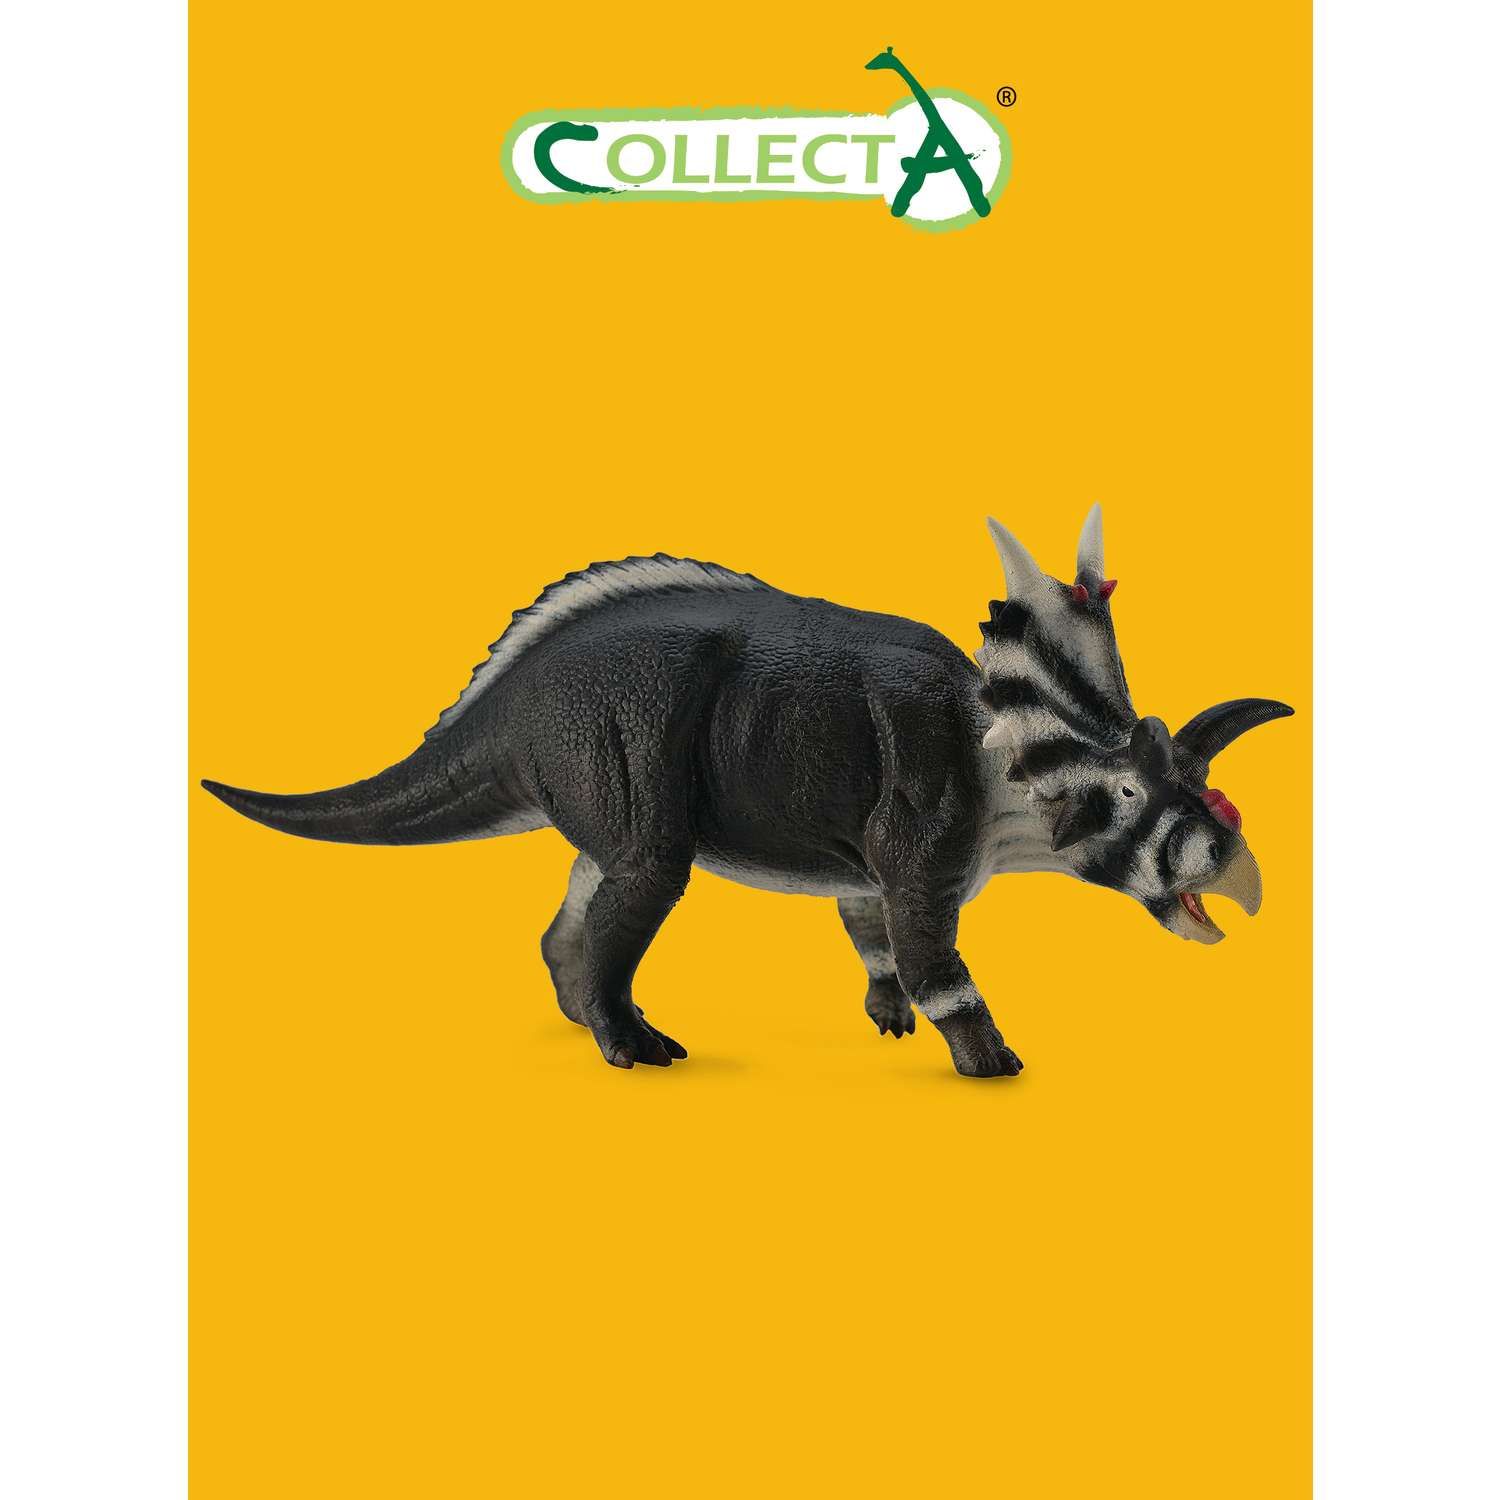 Игрушка Collecta Ксеноцератопс фигурка динозавра - фото 1